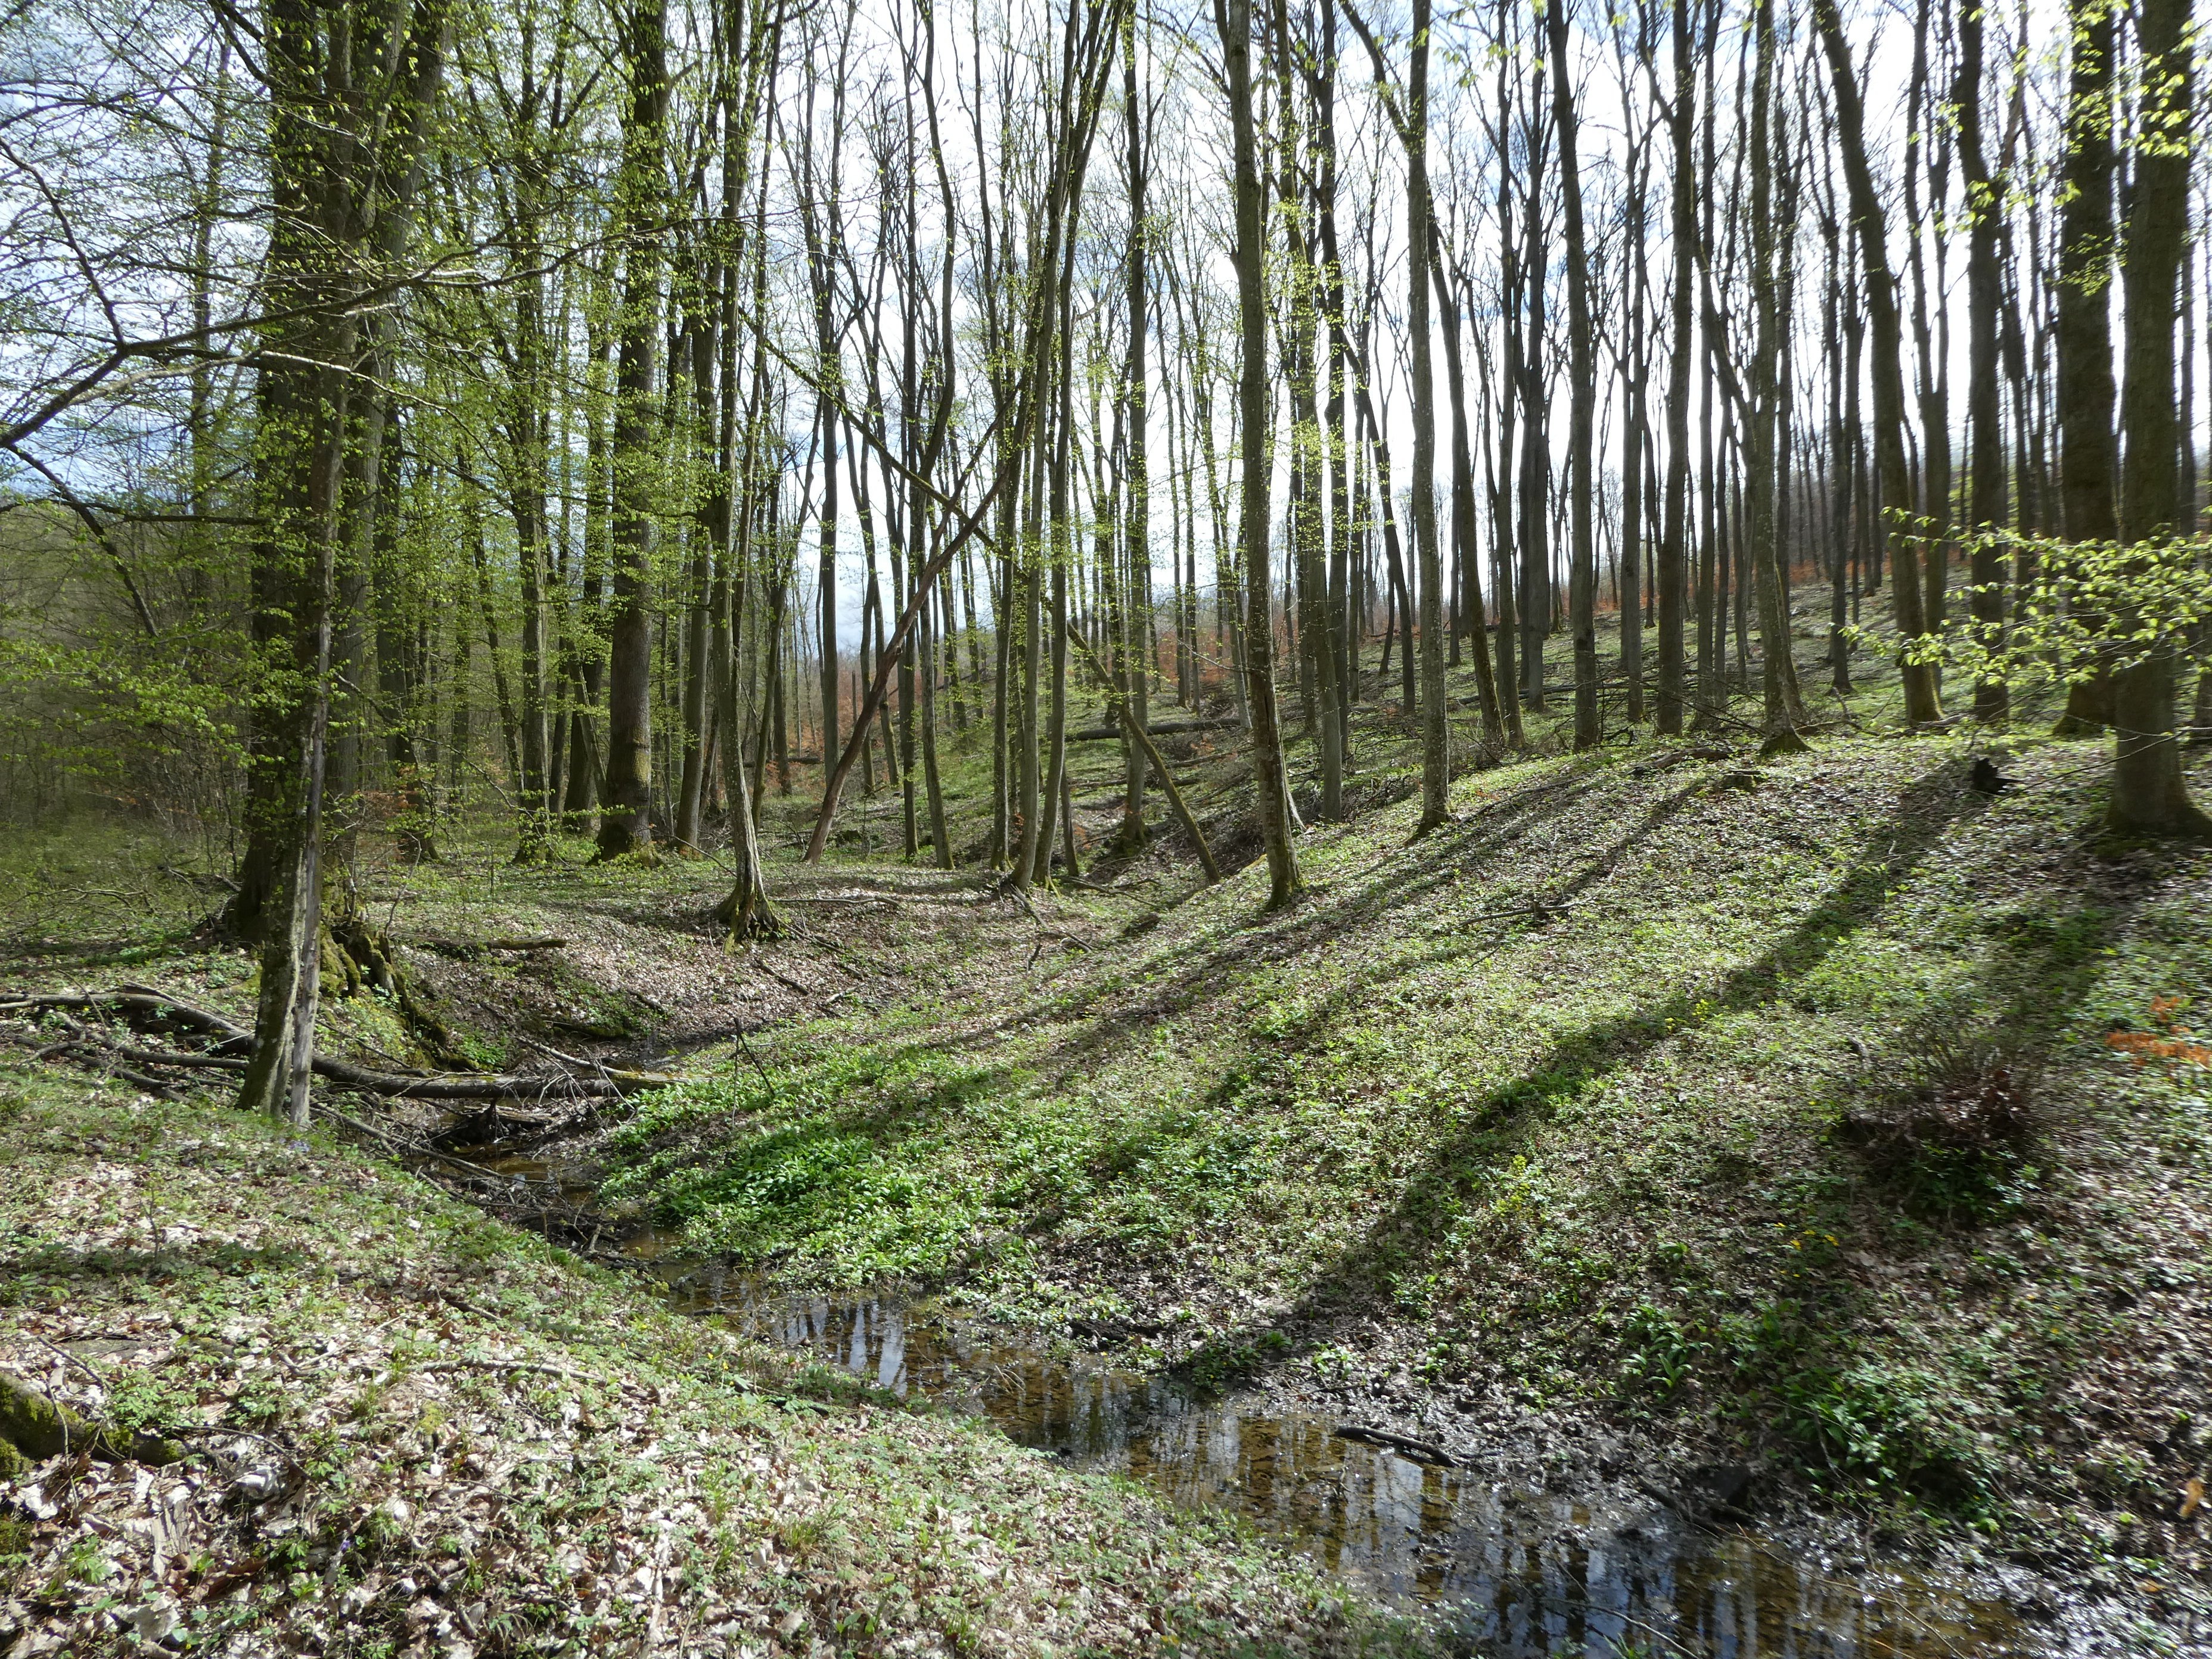 Üde lomberdei patakvölgy, Zselic, Ropolyi-erdő (Rippl-Rónai Múzeum CC BY-NC-ND)